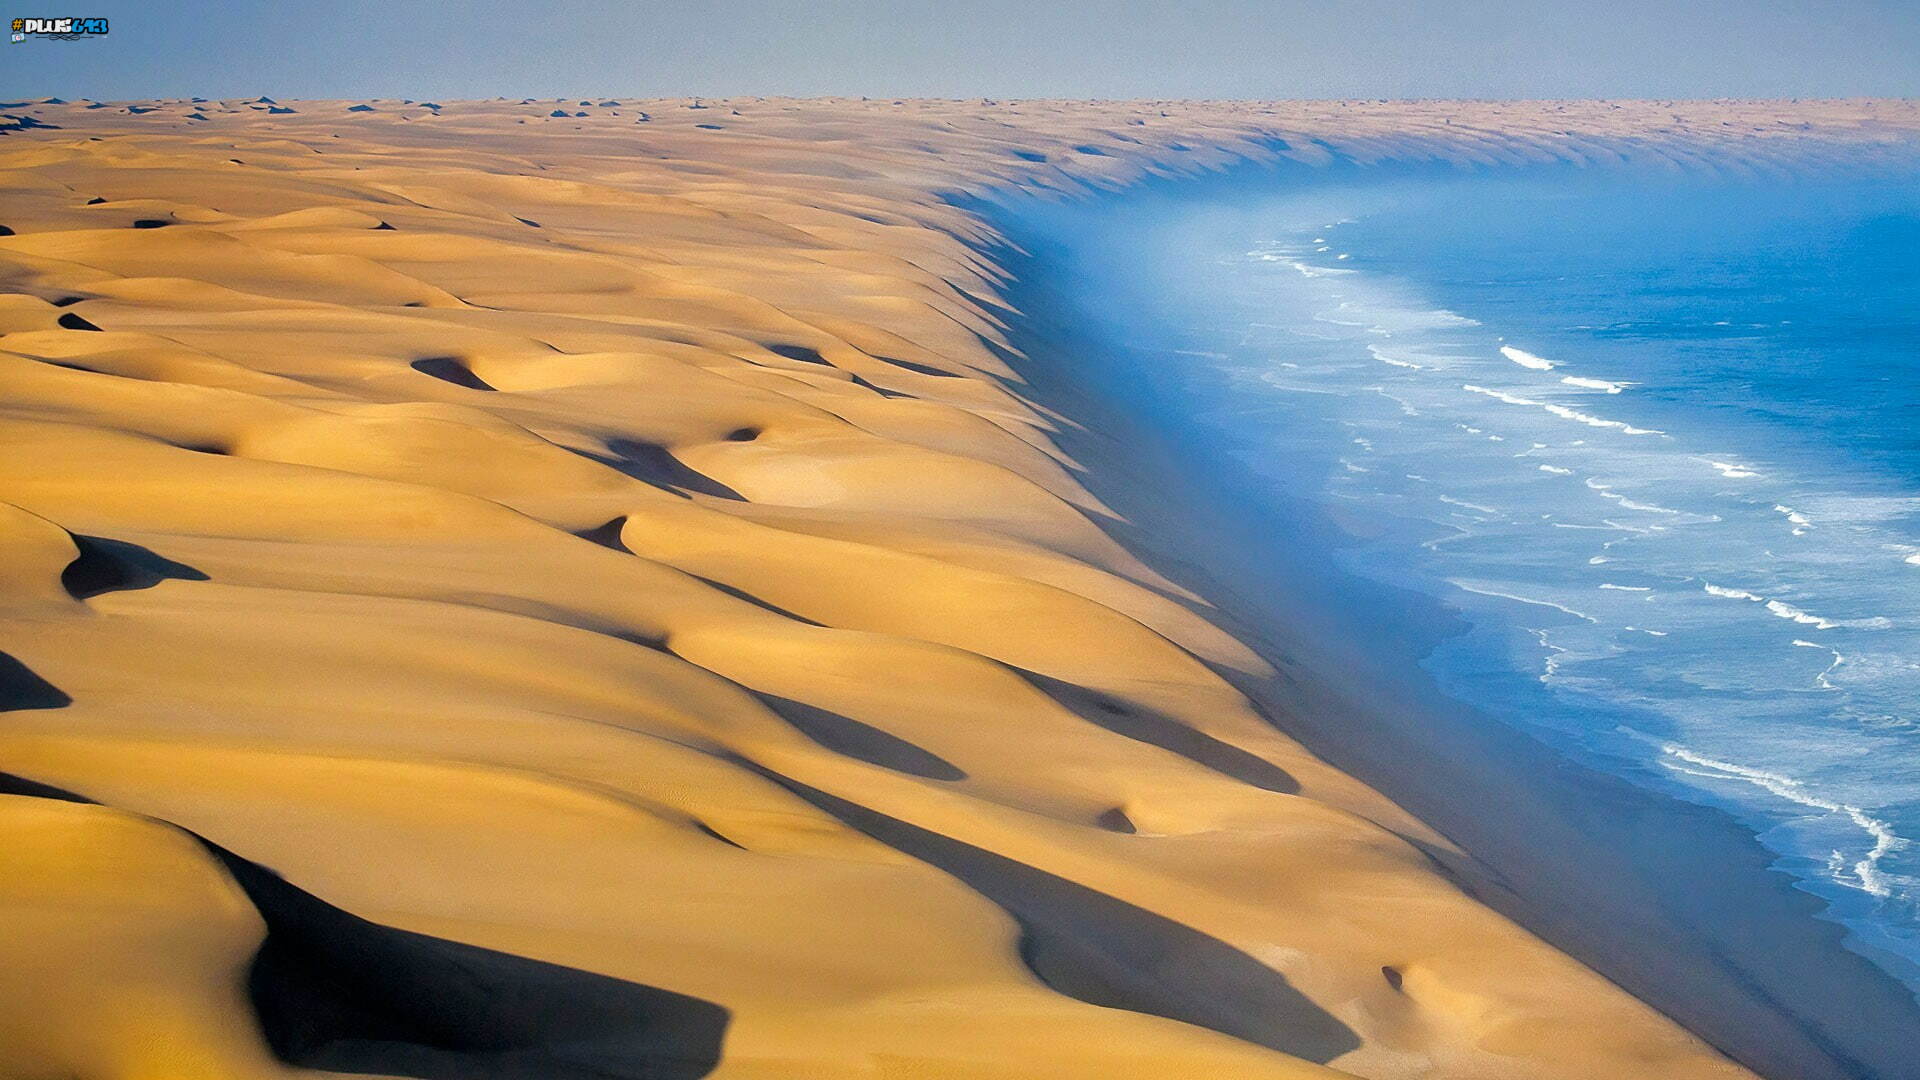 namib desert meets atlantic ocean